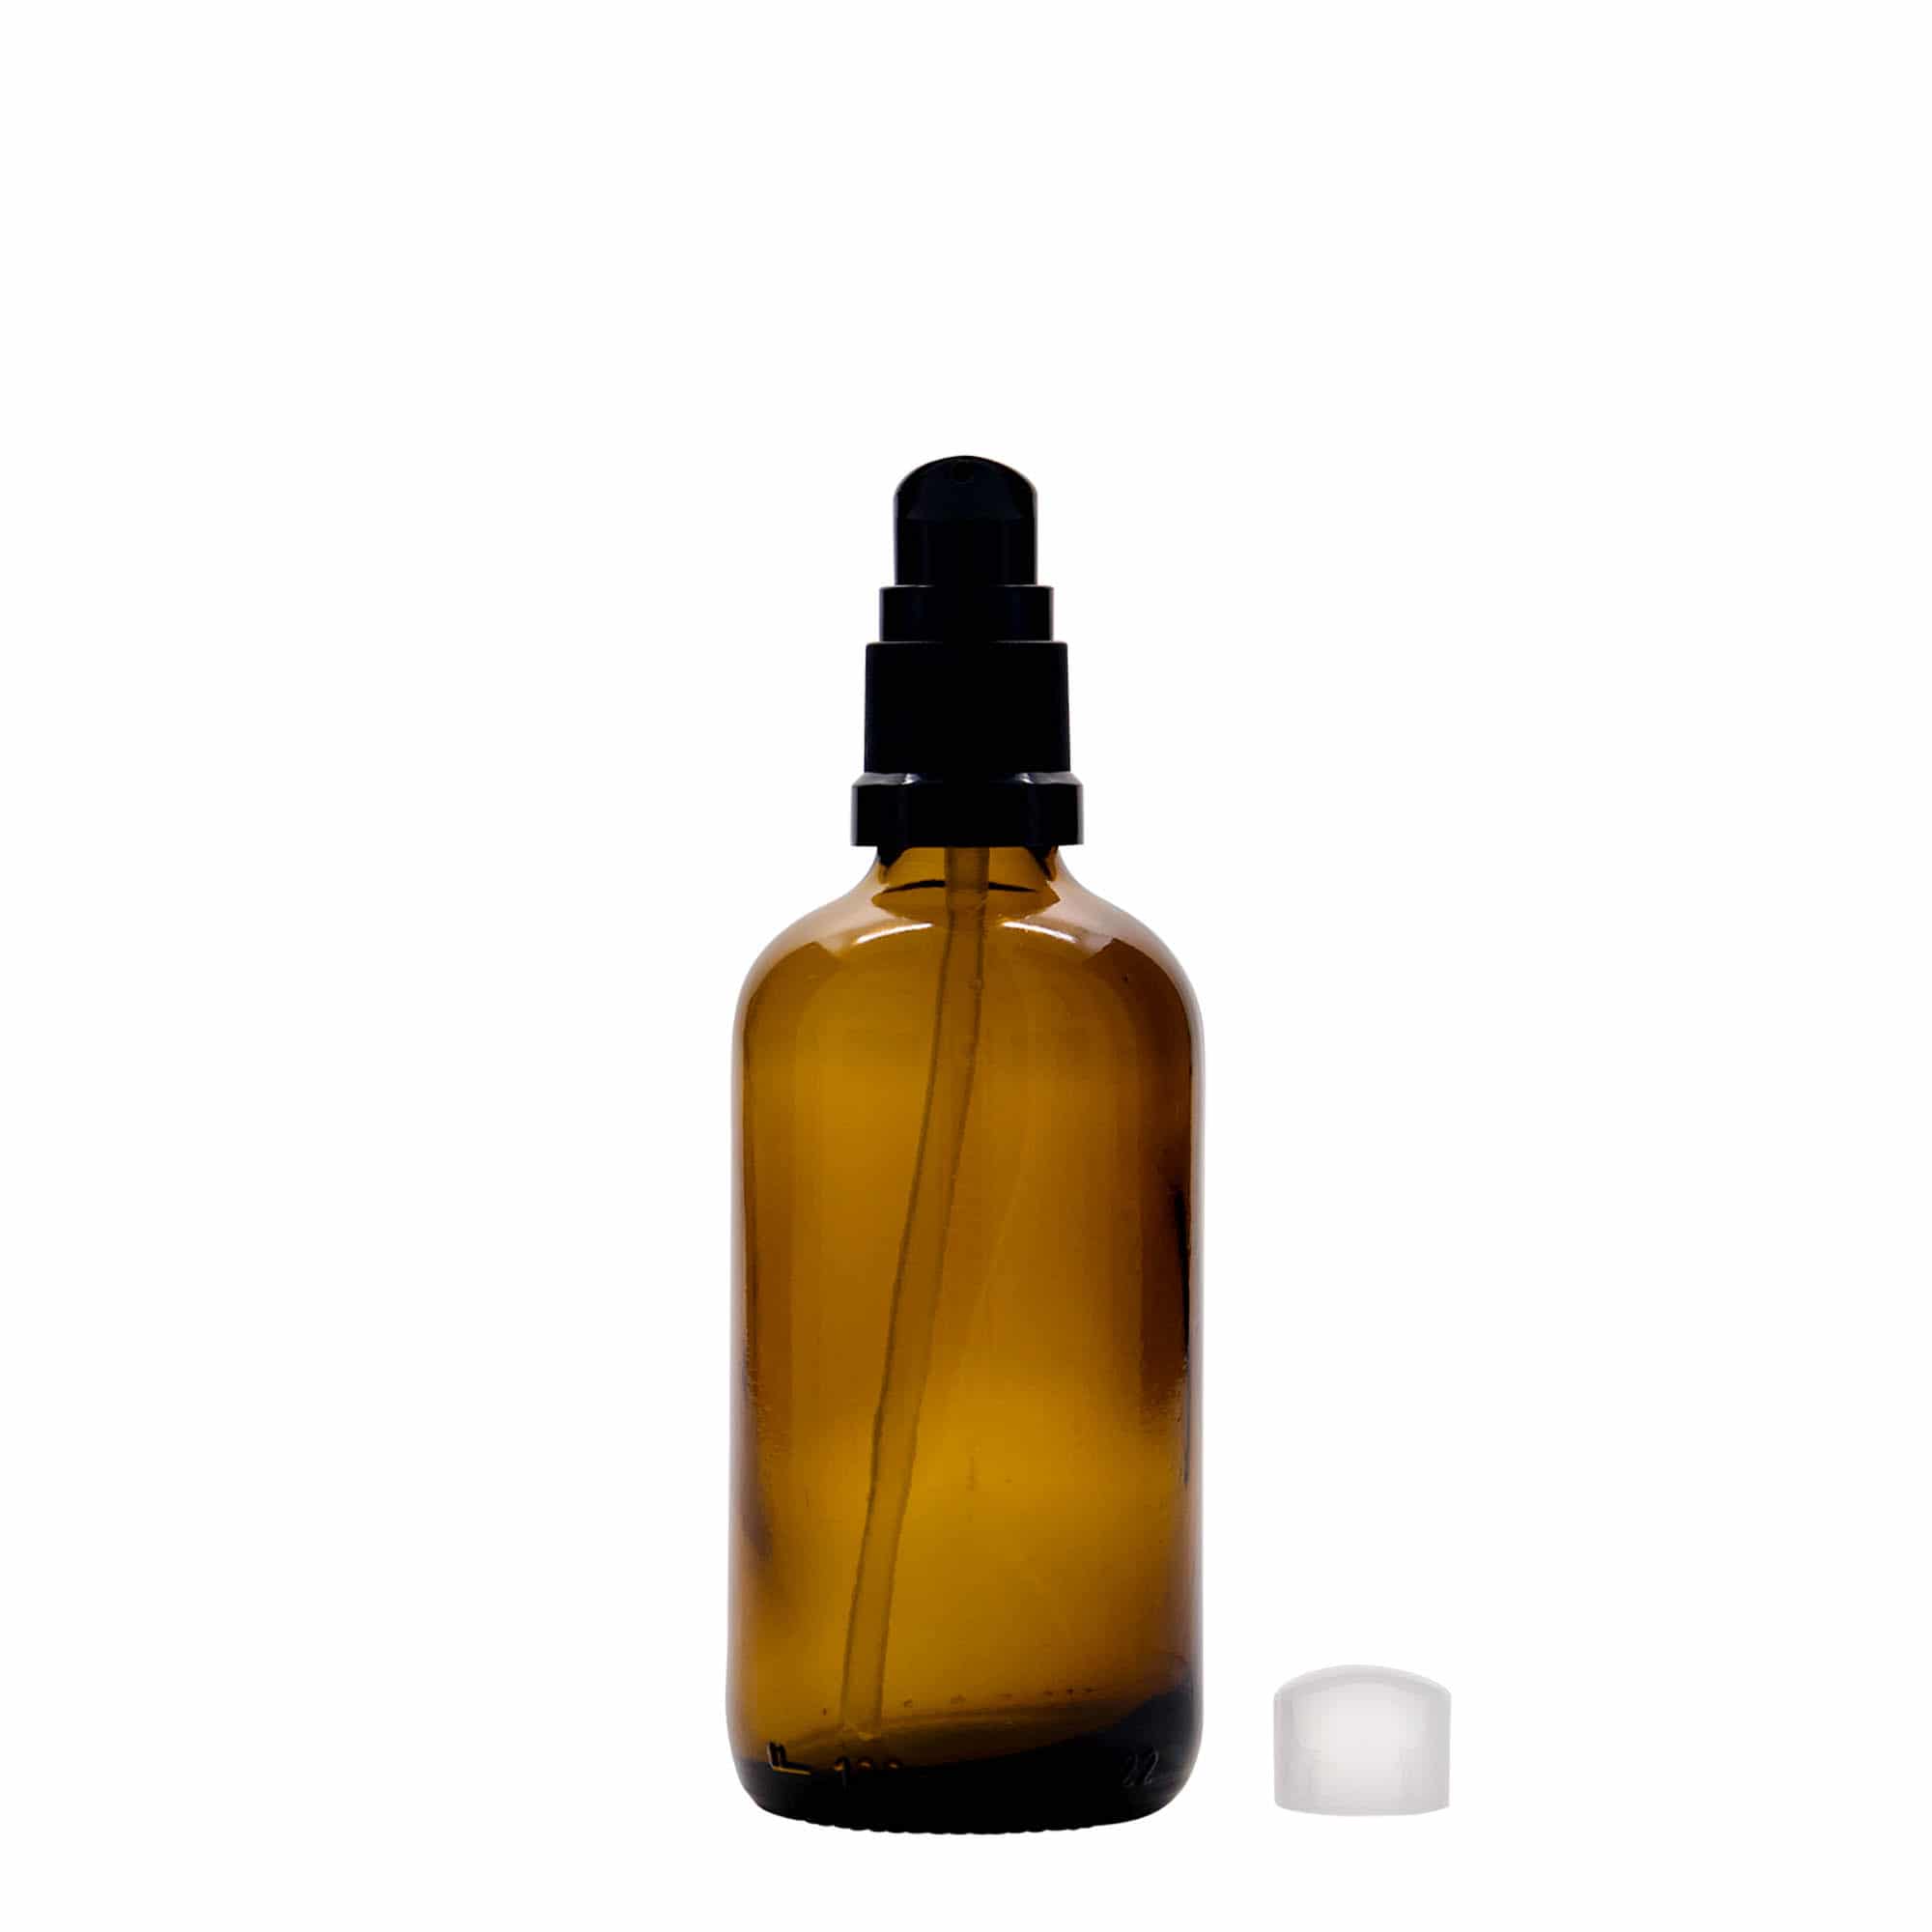 100 ml Medizinflasche mit Lotionspumpe, Glas, braun, Mündung: DIN 18